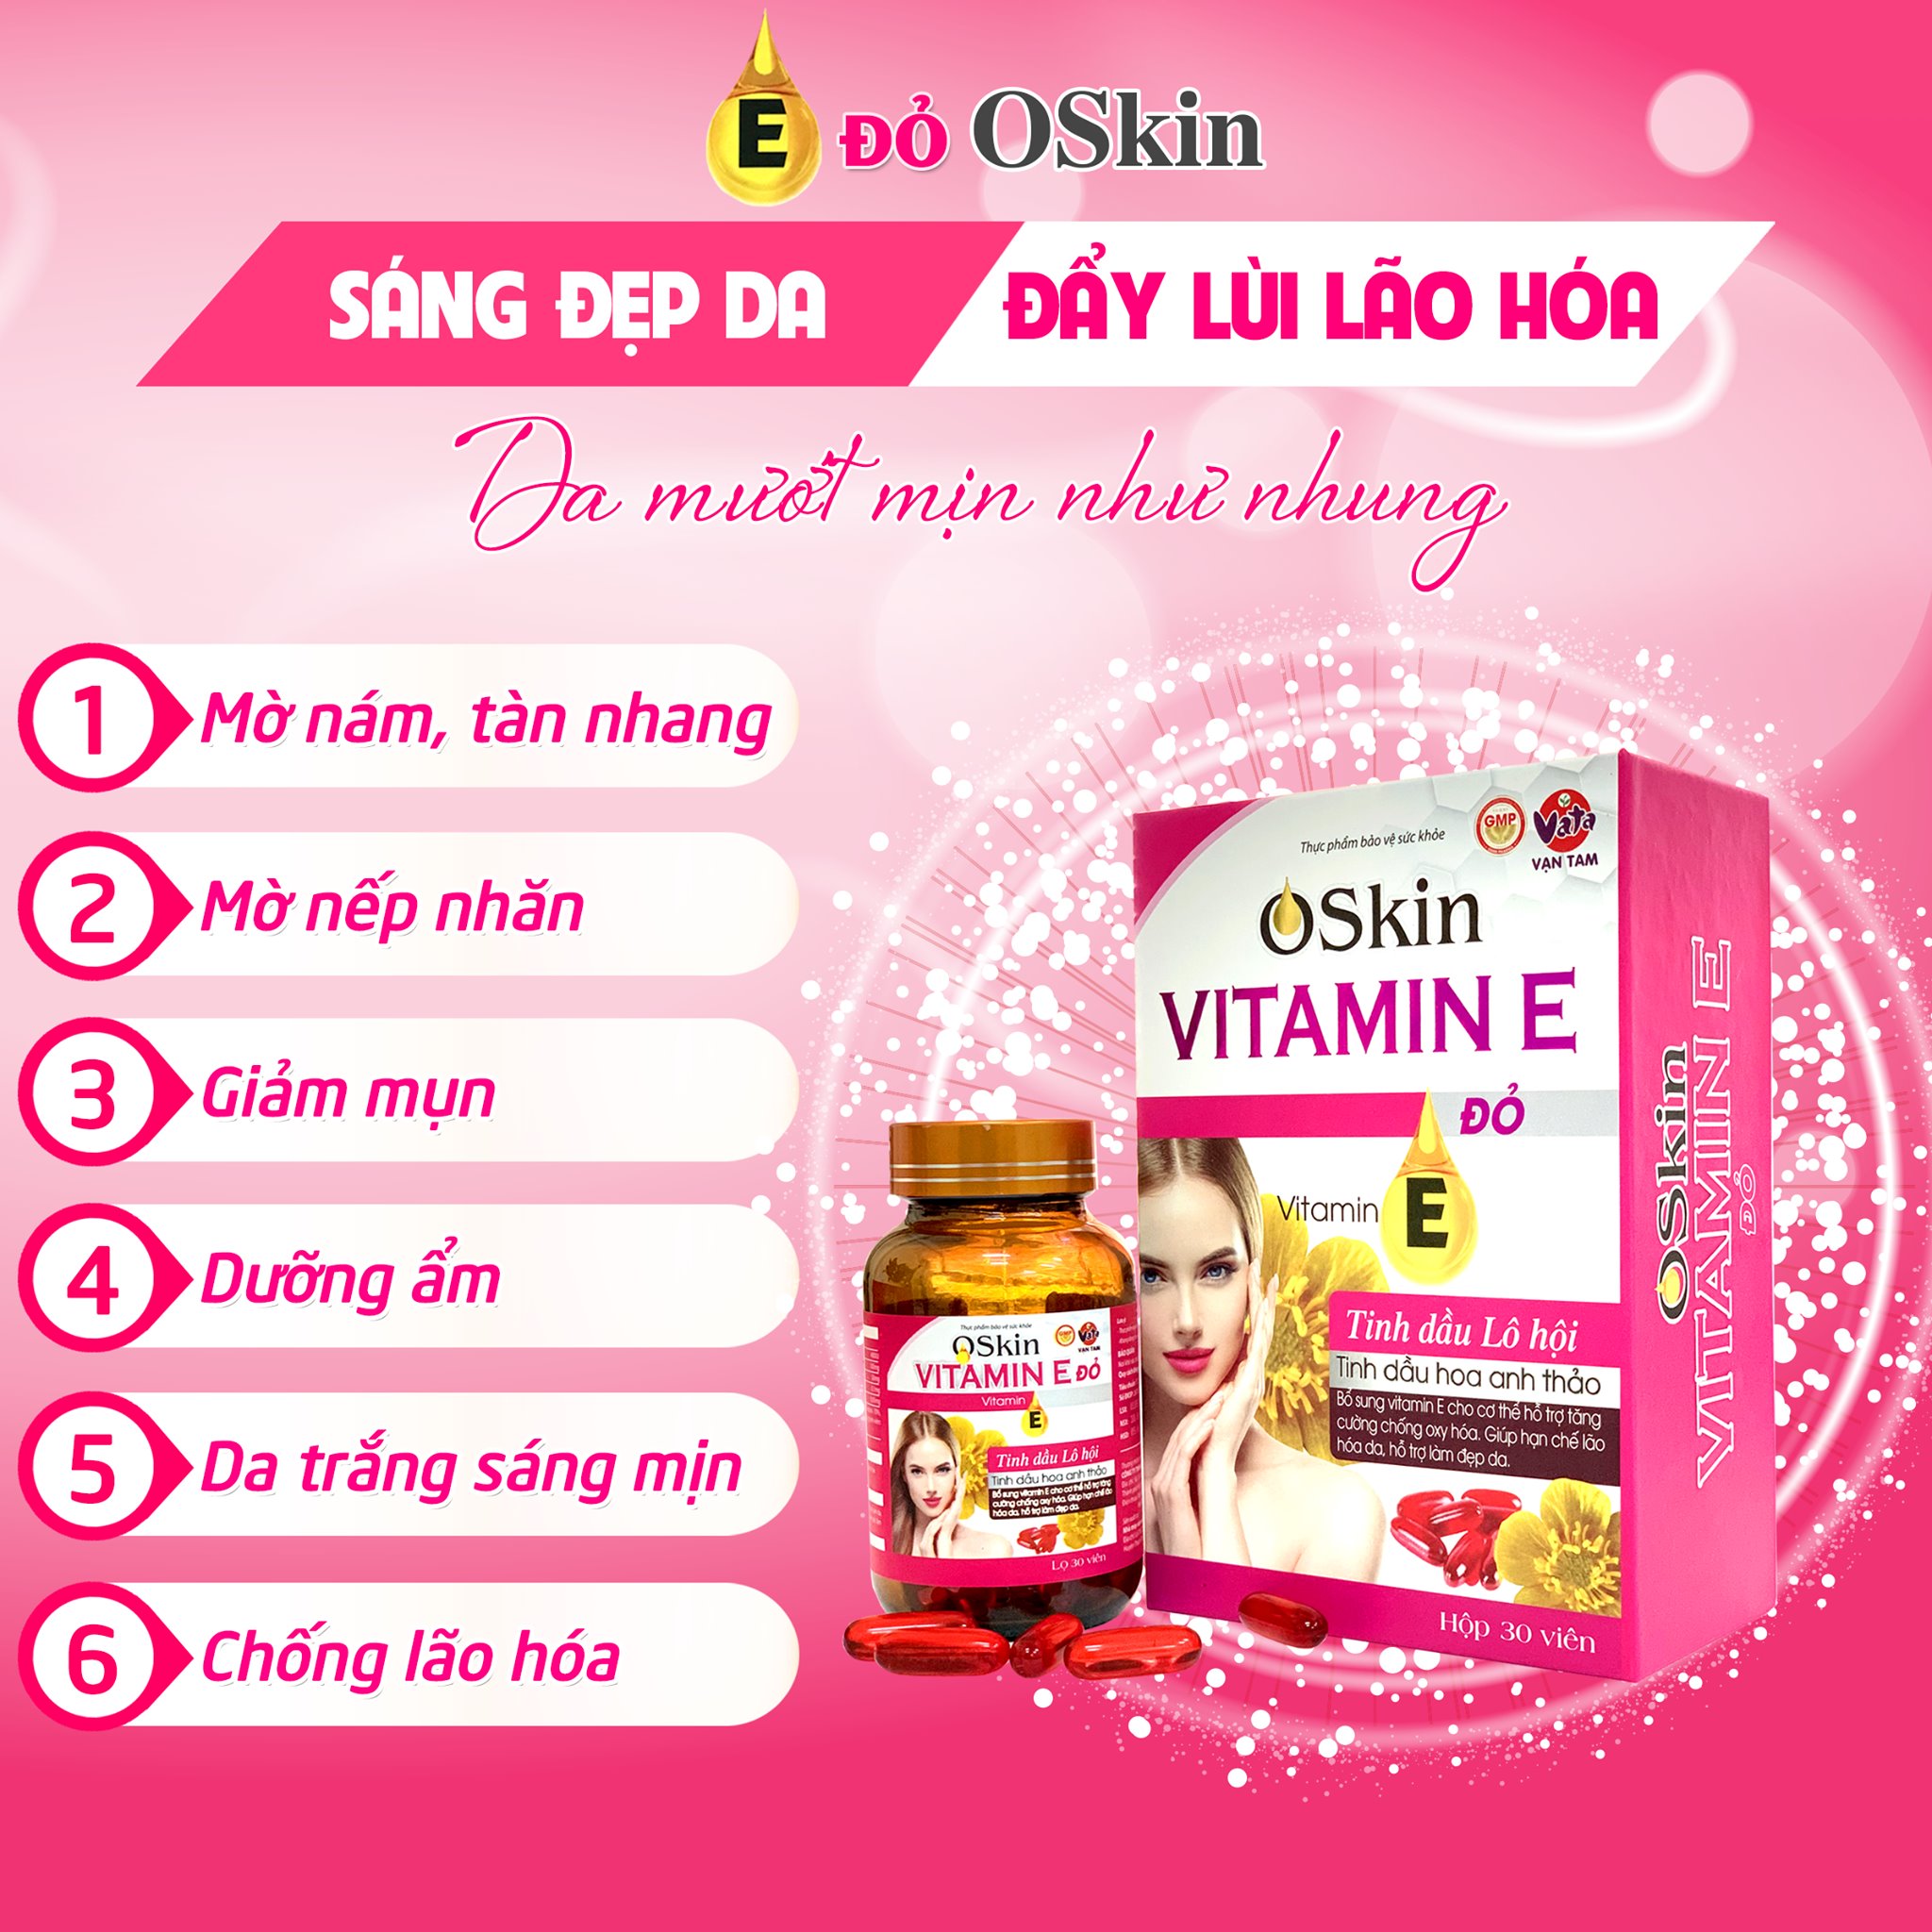 cong-dung-vien-uong-dep-da-oskin-vitamin-e-do